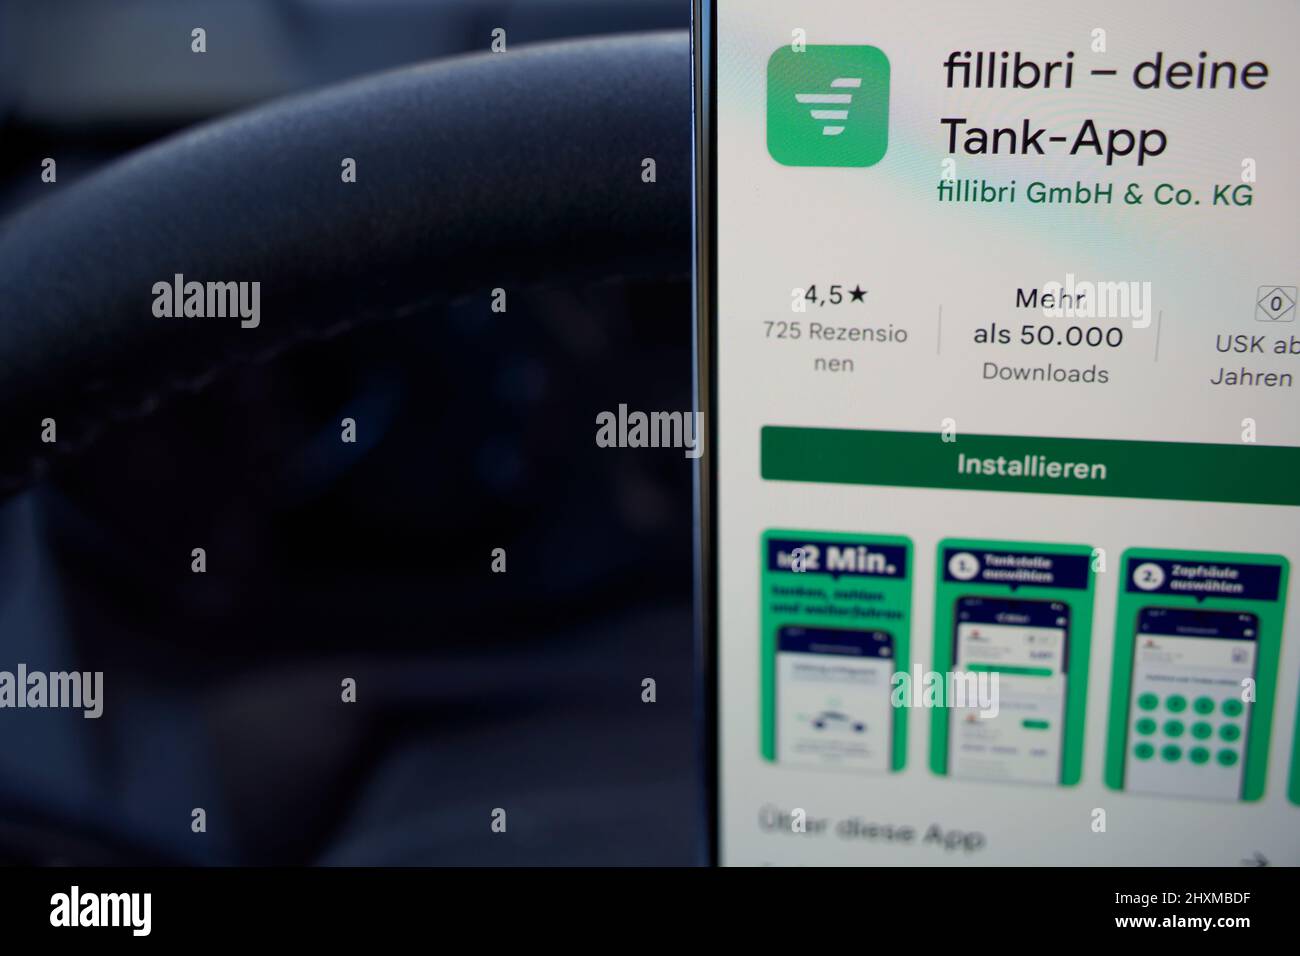 Stuttgart, Allemagne - 11 mars 2022: Application pour smartphone Fillibri tank app, trouve toujours la station-service la moins chère (Tankstelle). Icône de lancement à l'écran dans Banque D'Images